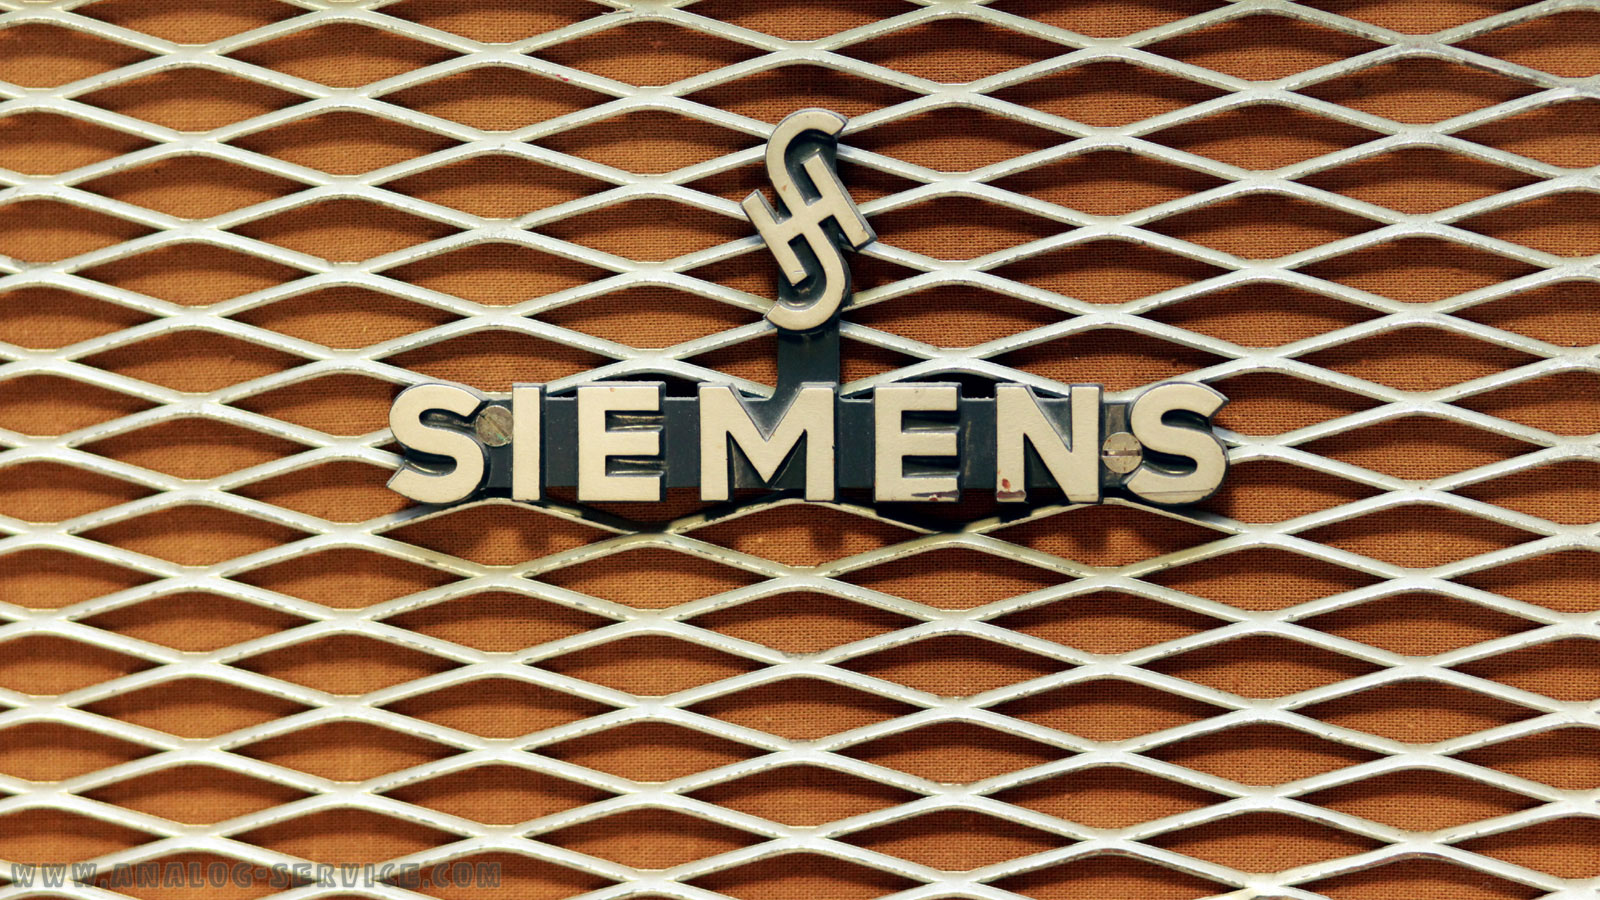 Das Logo in Großaufnahme. Es wurde das Siemens & Halske Logo (H über S) verwendet. Darunter steht Siemens. Das logo ist sehr groß und massiv ausgeführt